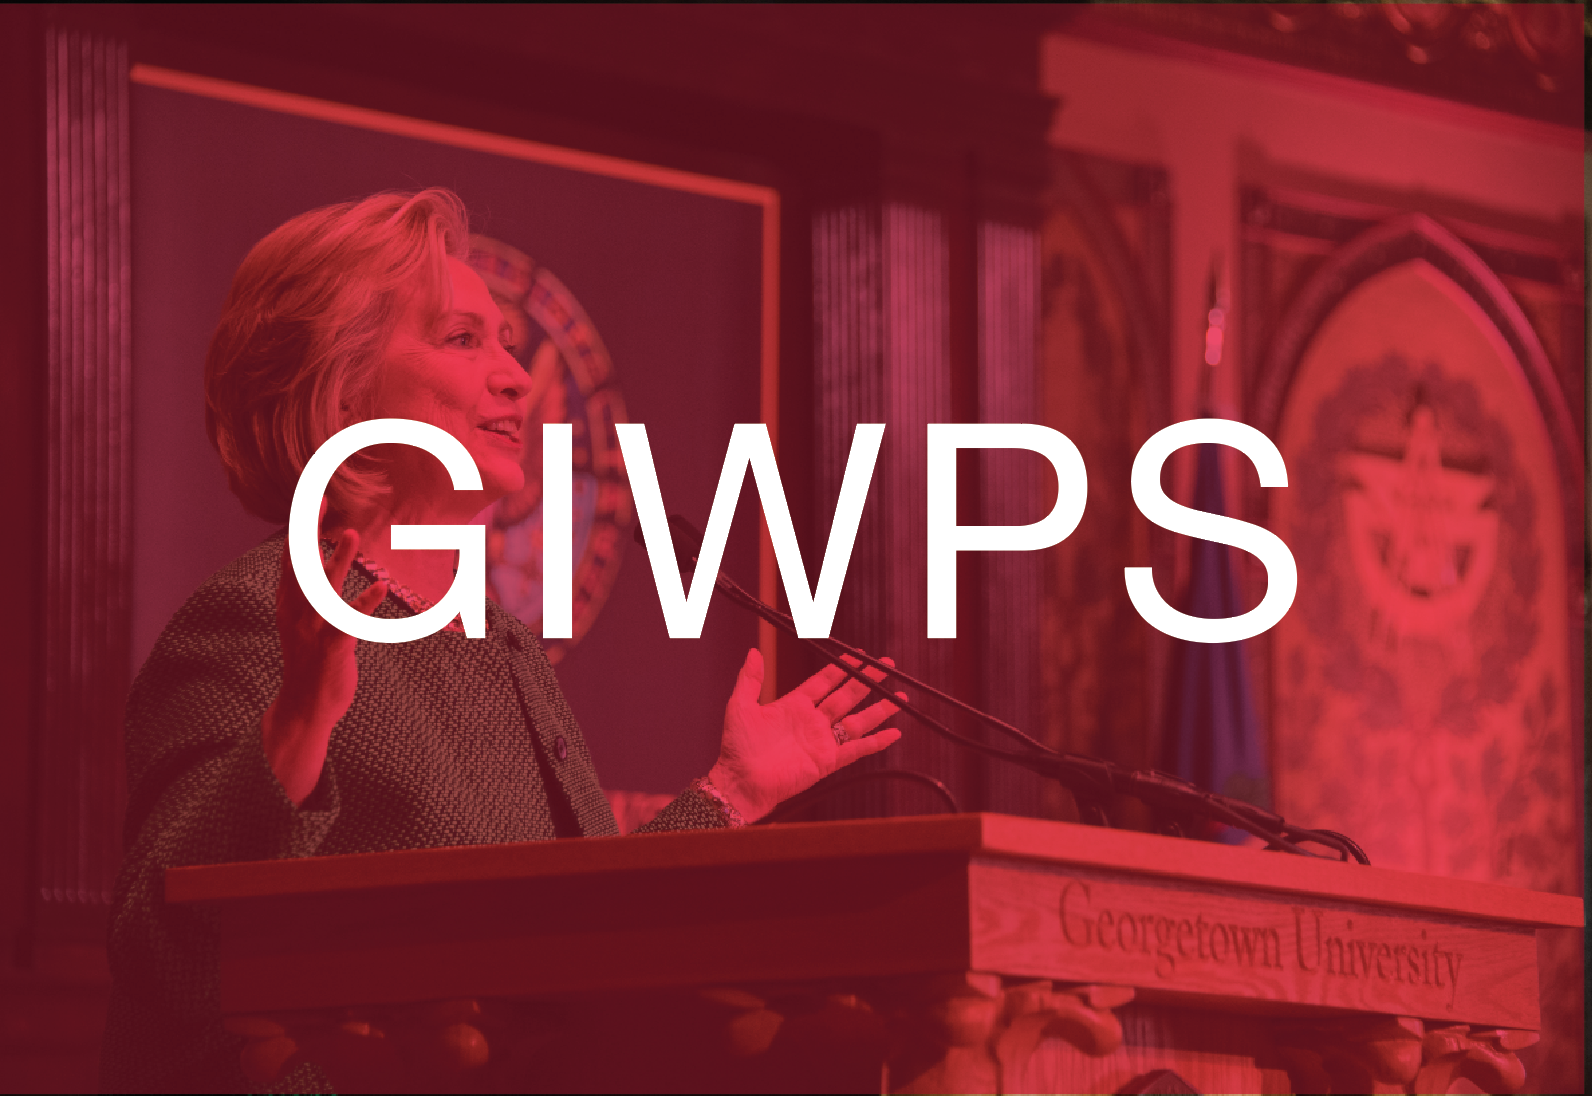 GIWPS acronym